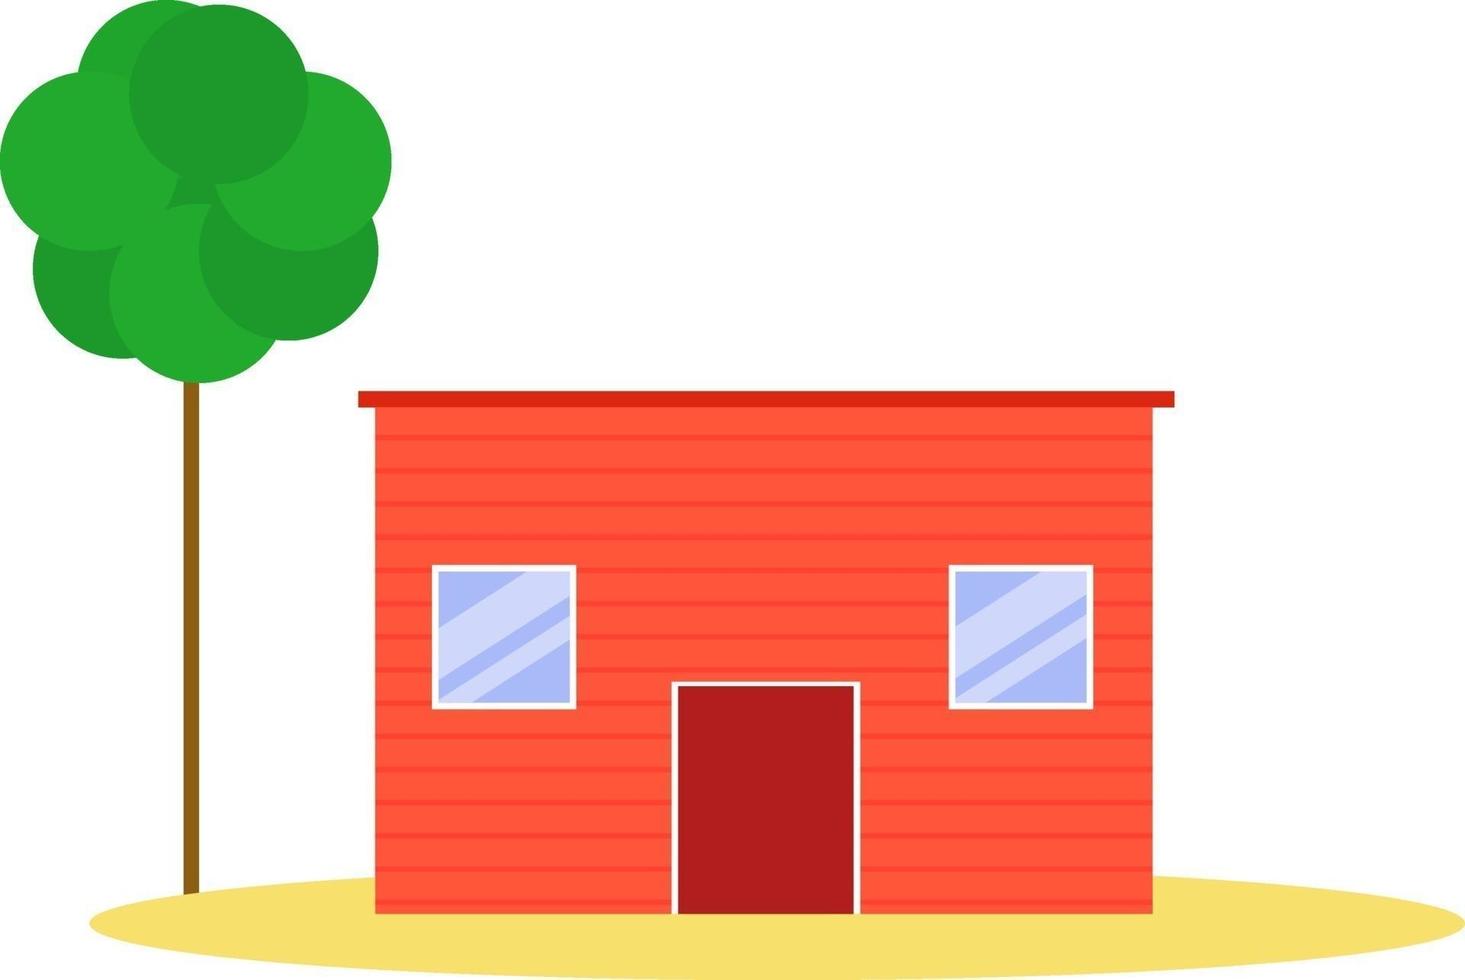 Bauernhaus, Illustration, Vektor auf weißem Hintergrund.